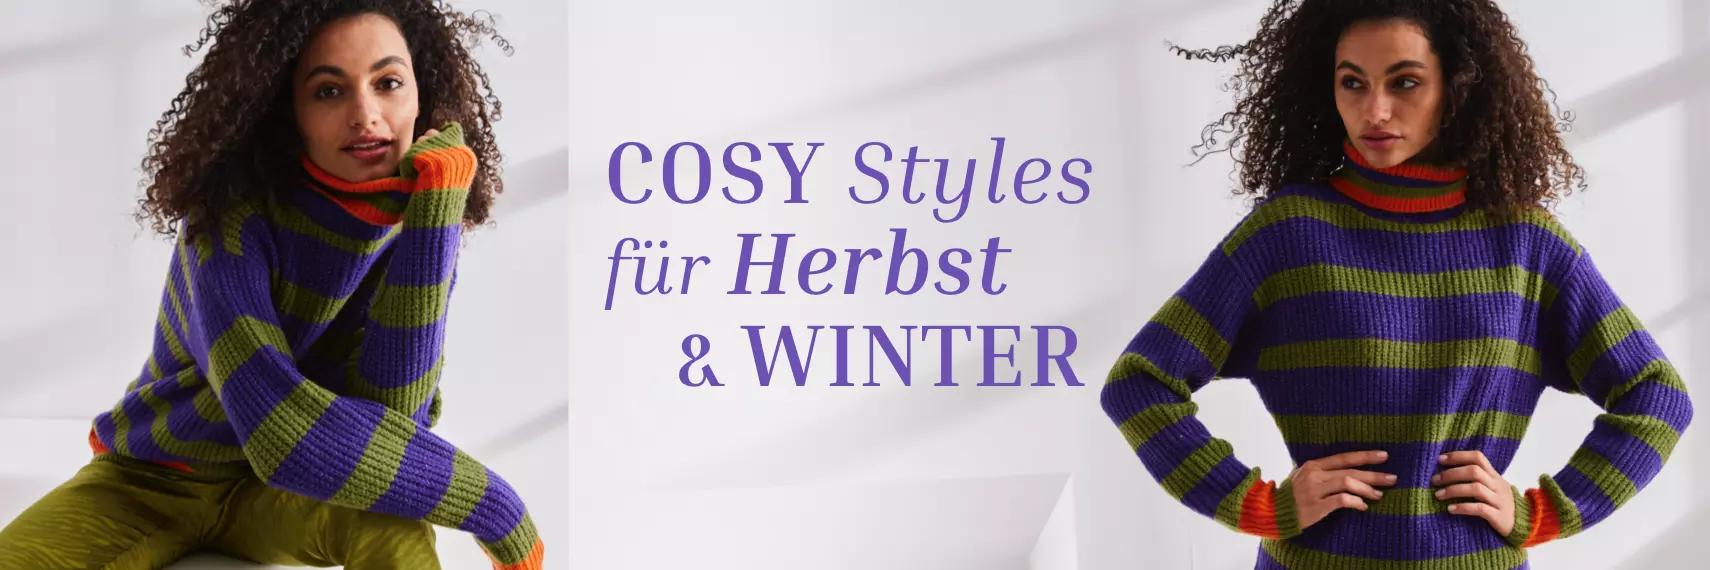 Cosy Styles für Herbst & Winter